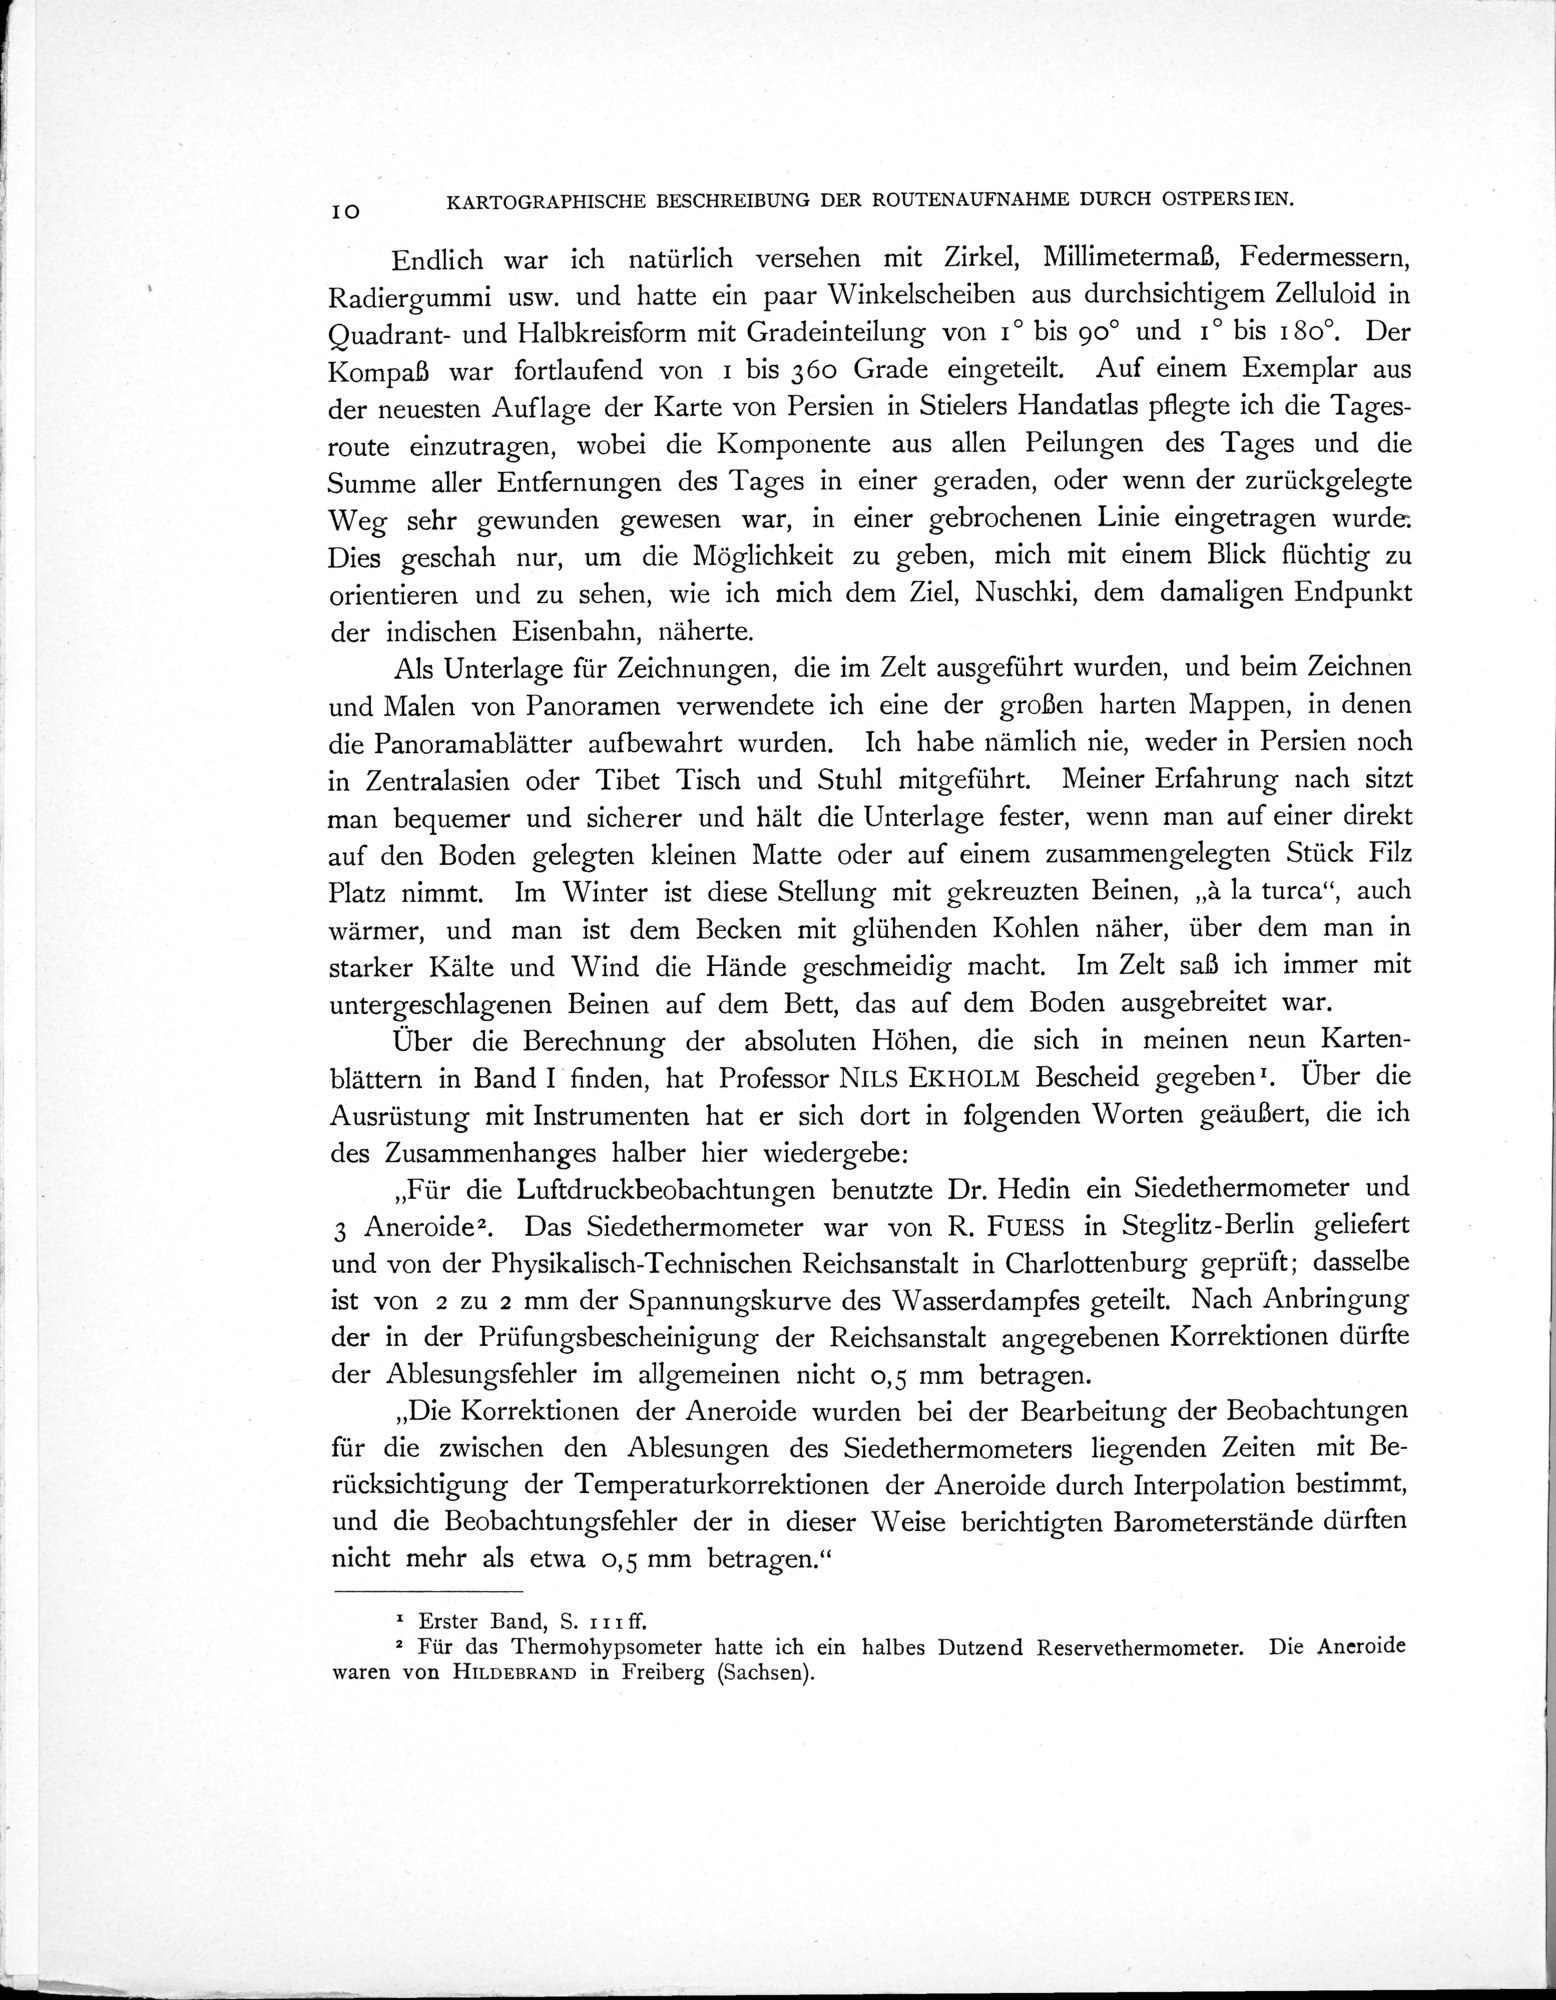 Eine Routenaufnahme durch Ostpersien : vol.2 / Page 24 (Grayscale High Resolution Image)